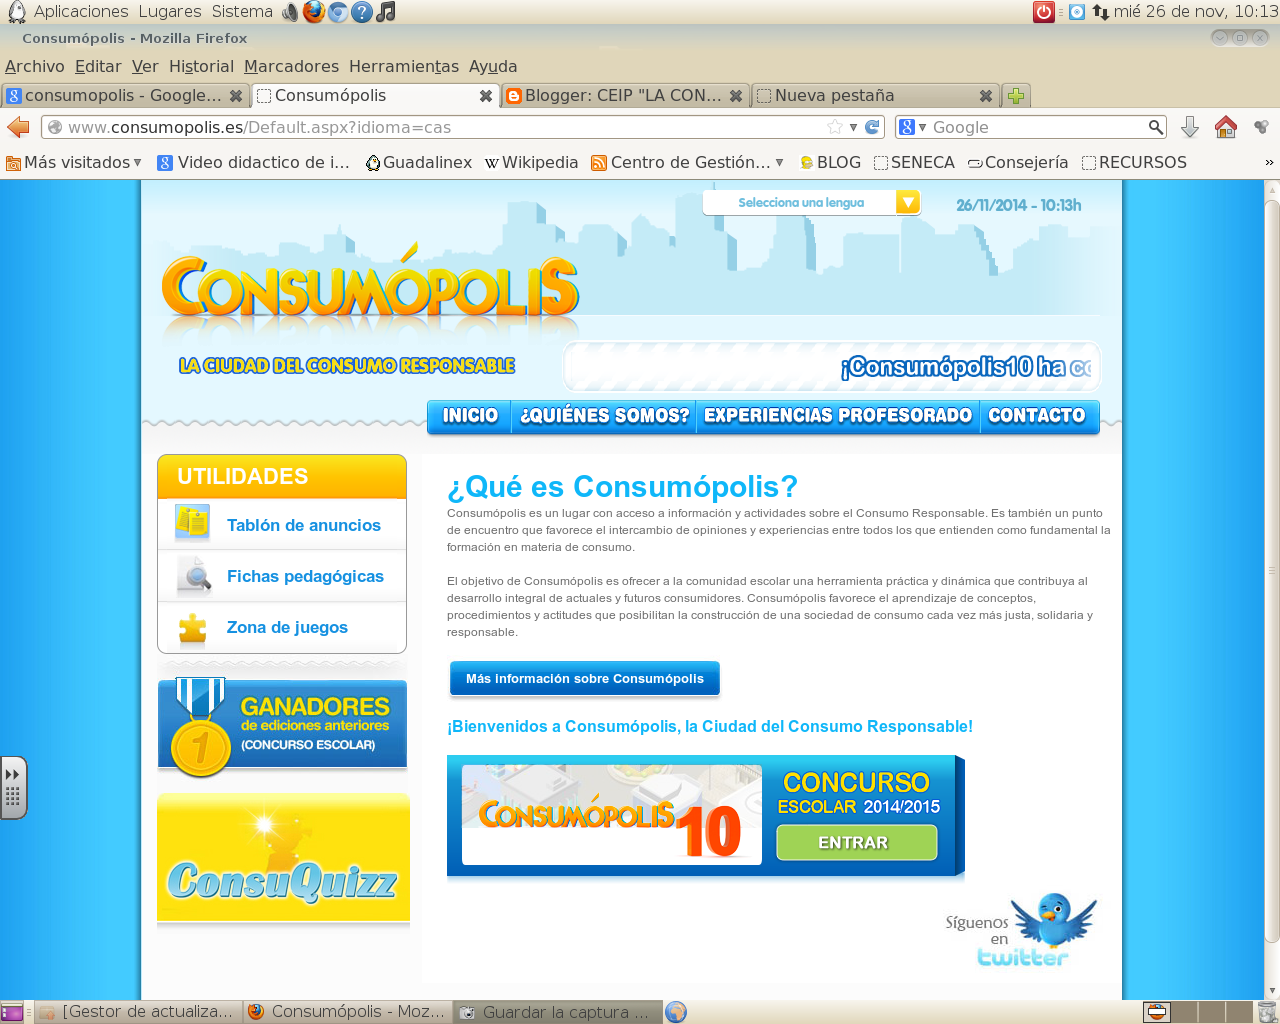 http://www.consumopolis.es/